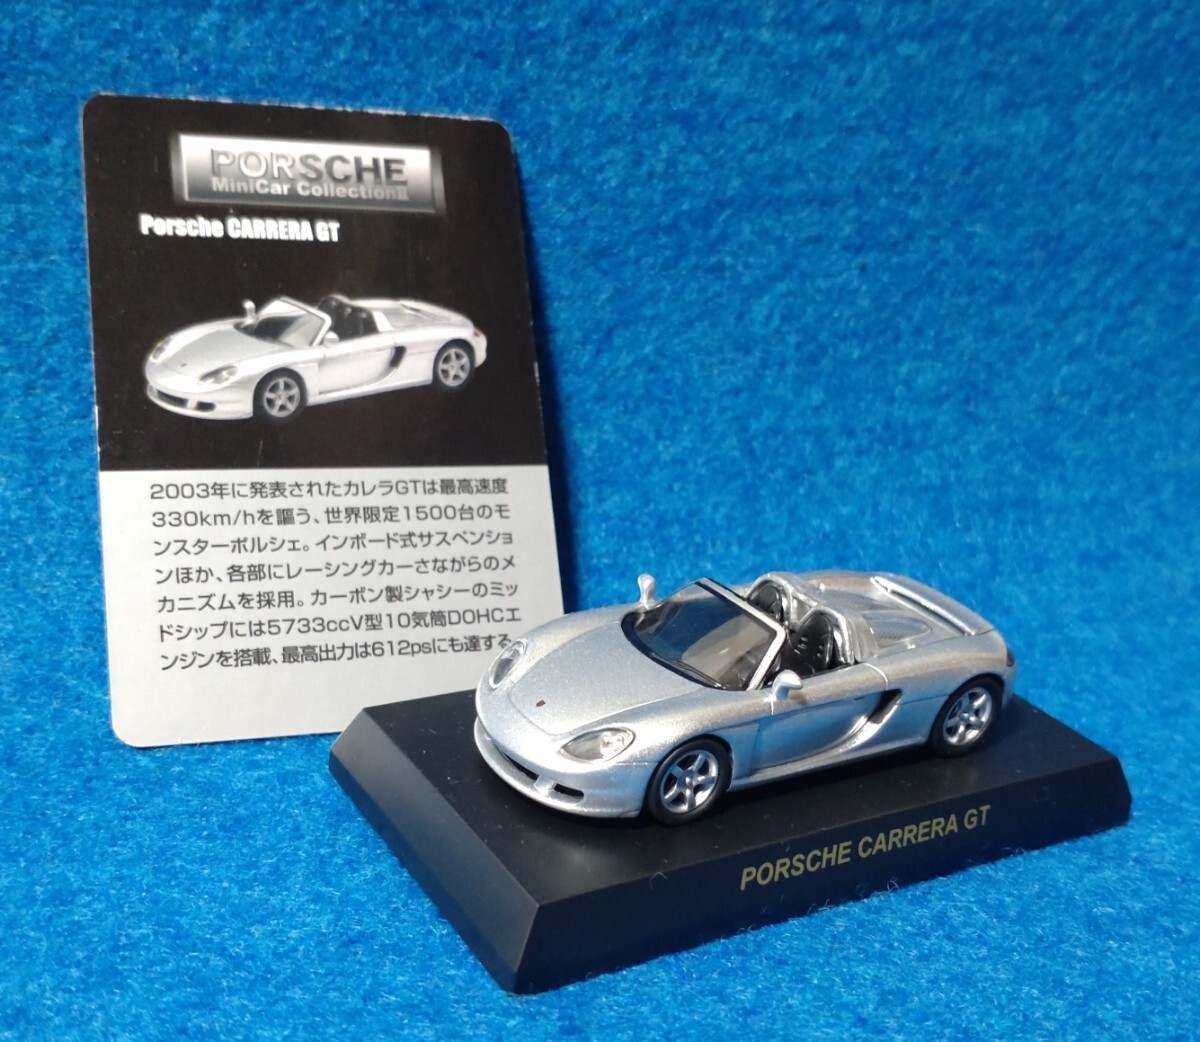 【ミニカー】京商1/64 Porsche2 CARRERA GT ポルシェ カレラ KYOSHO_画像1